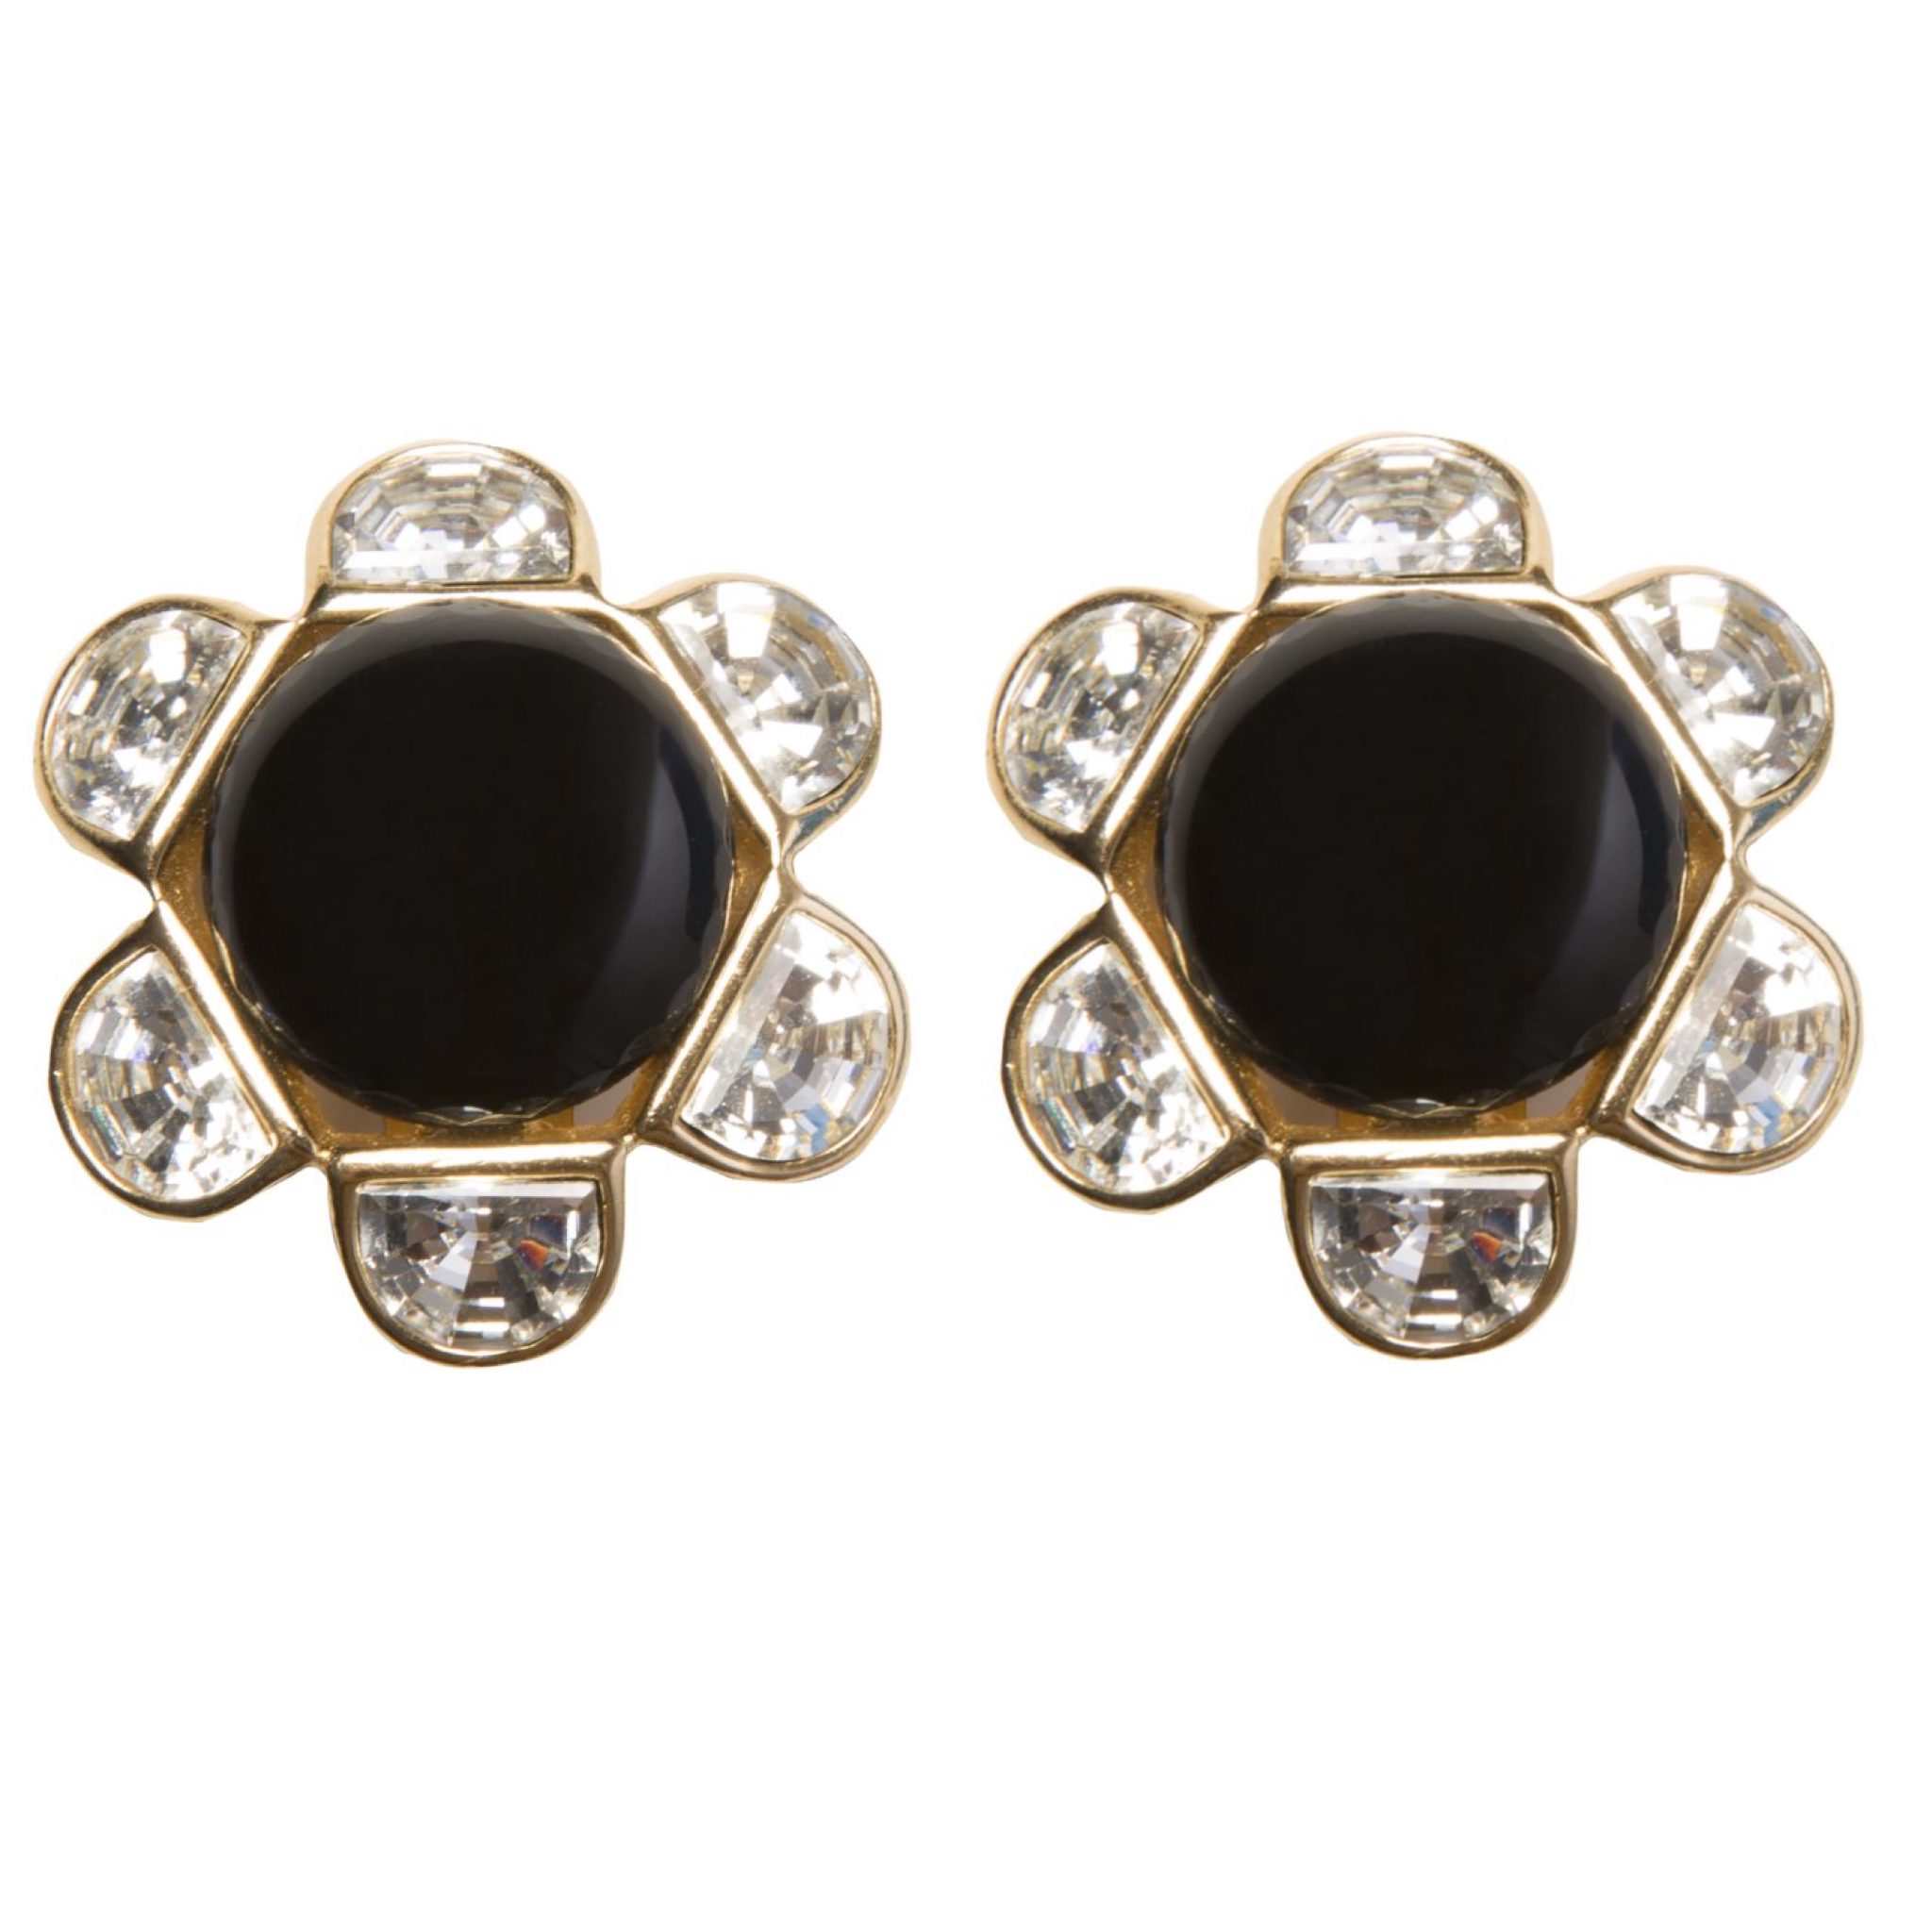 Vintage black enamel flower earrings